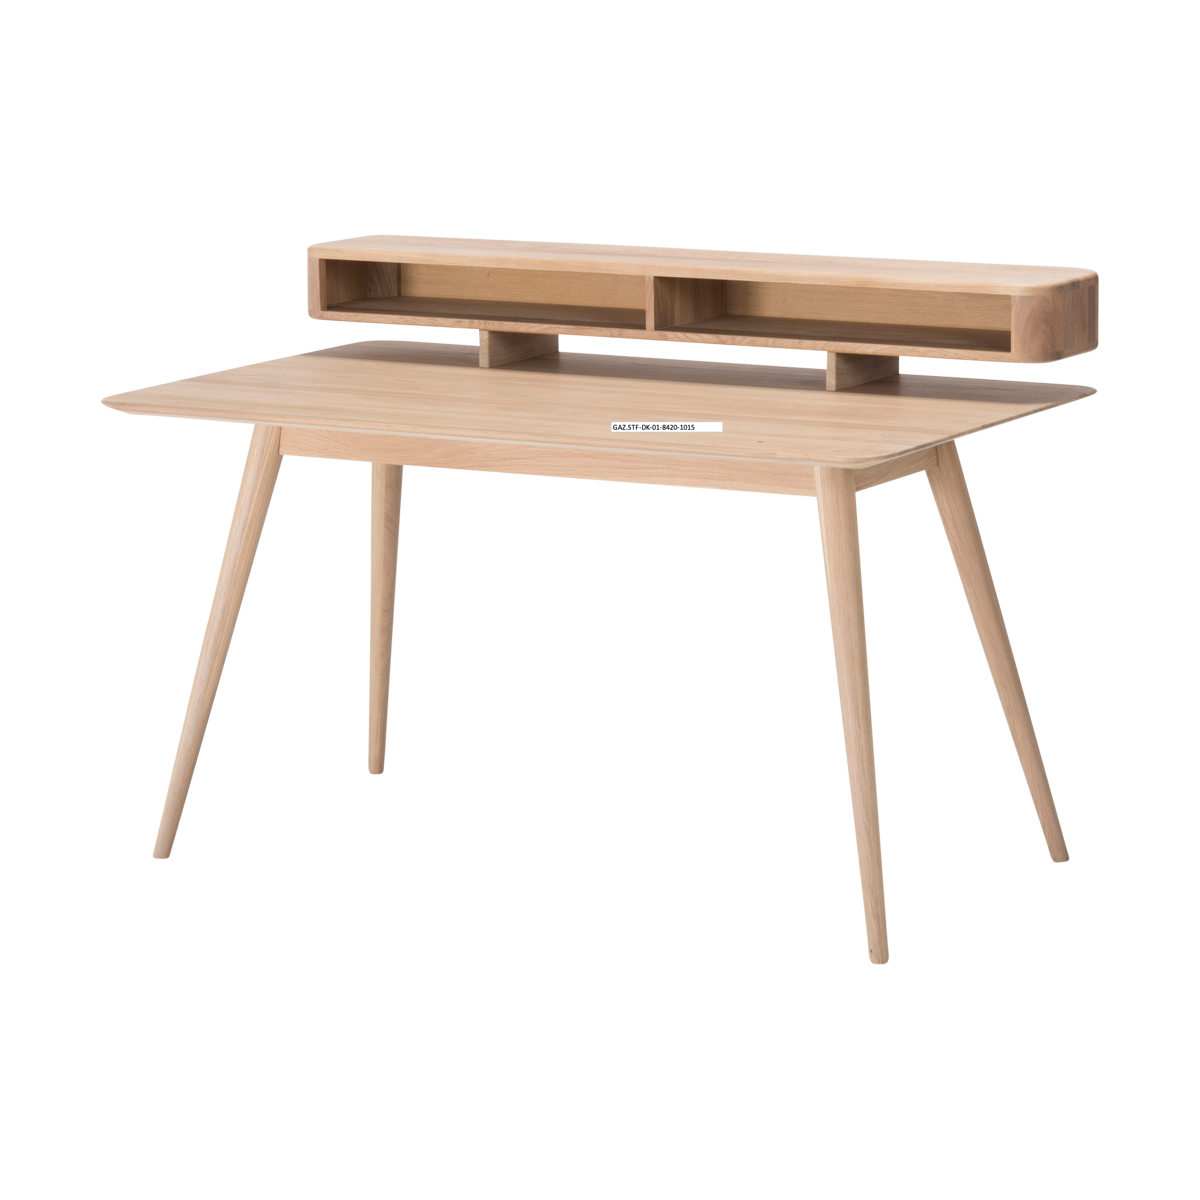 Stafa desk houten bureau whitewash - 140 x 80 cm